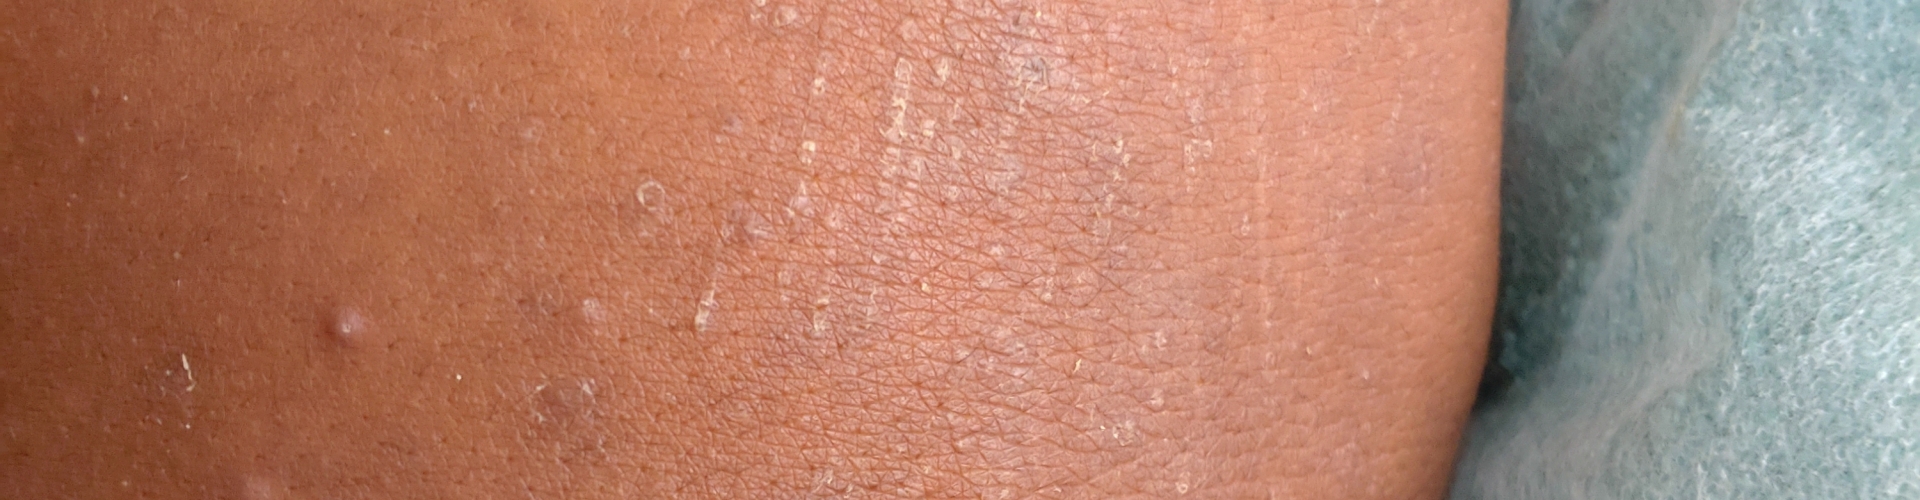 Een droge huid in een gekleurde huid